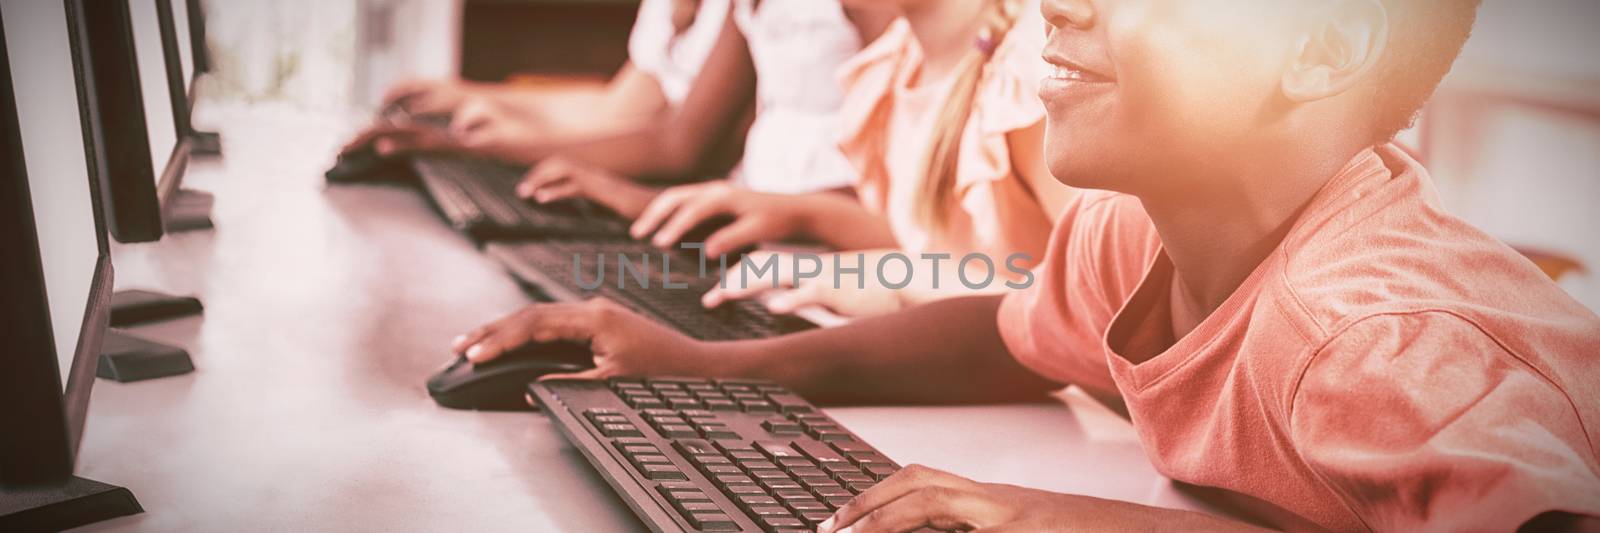 Children computer in classroom at school